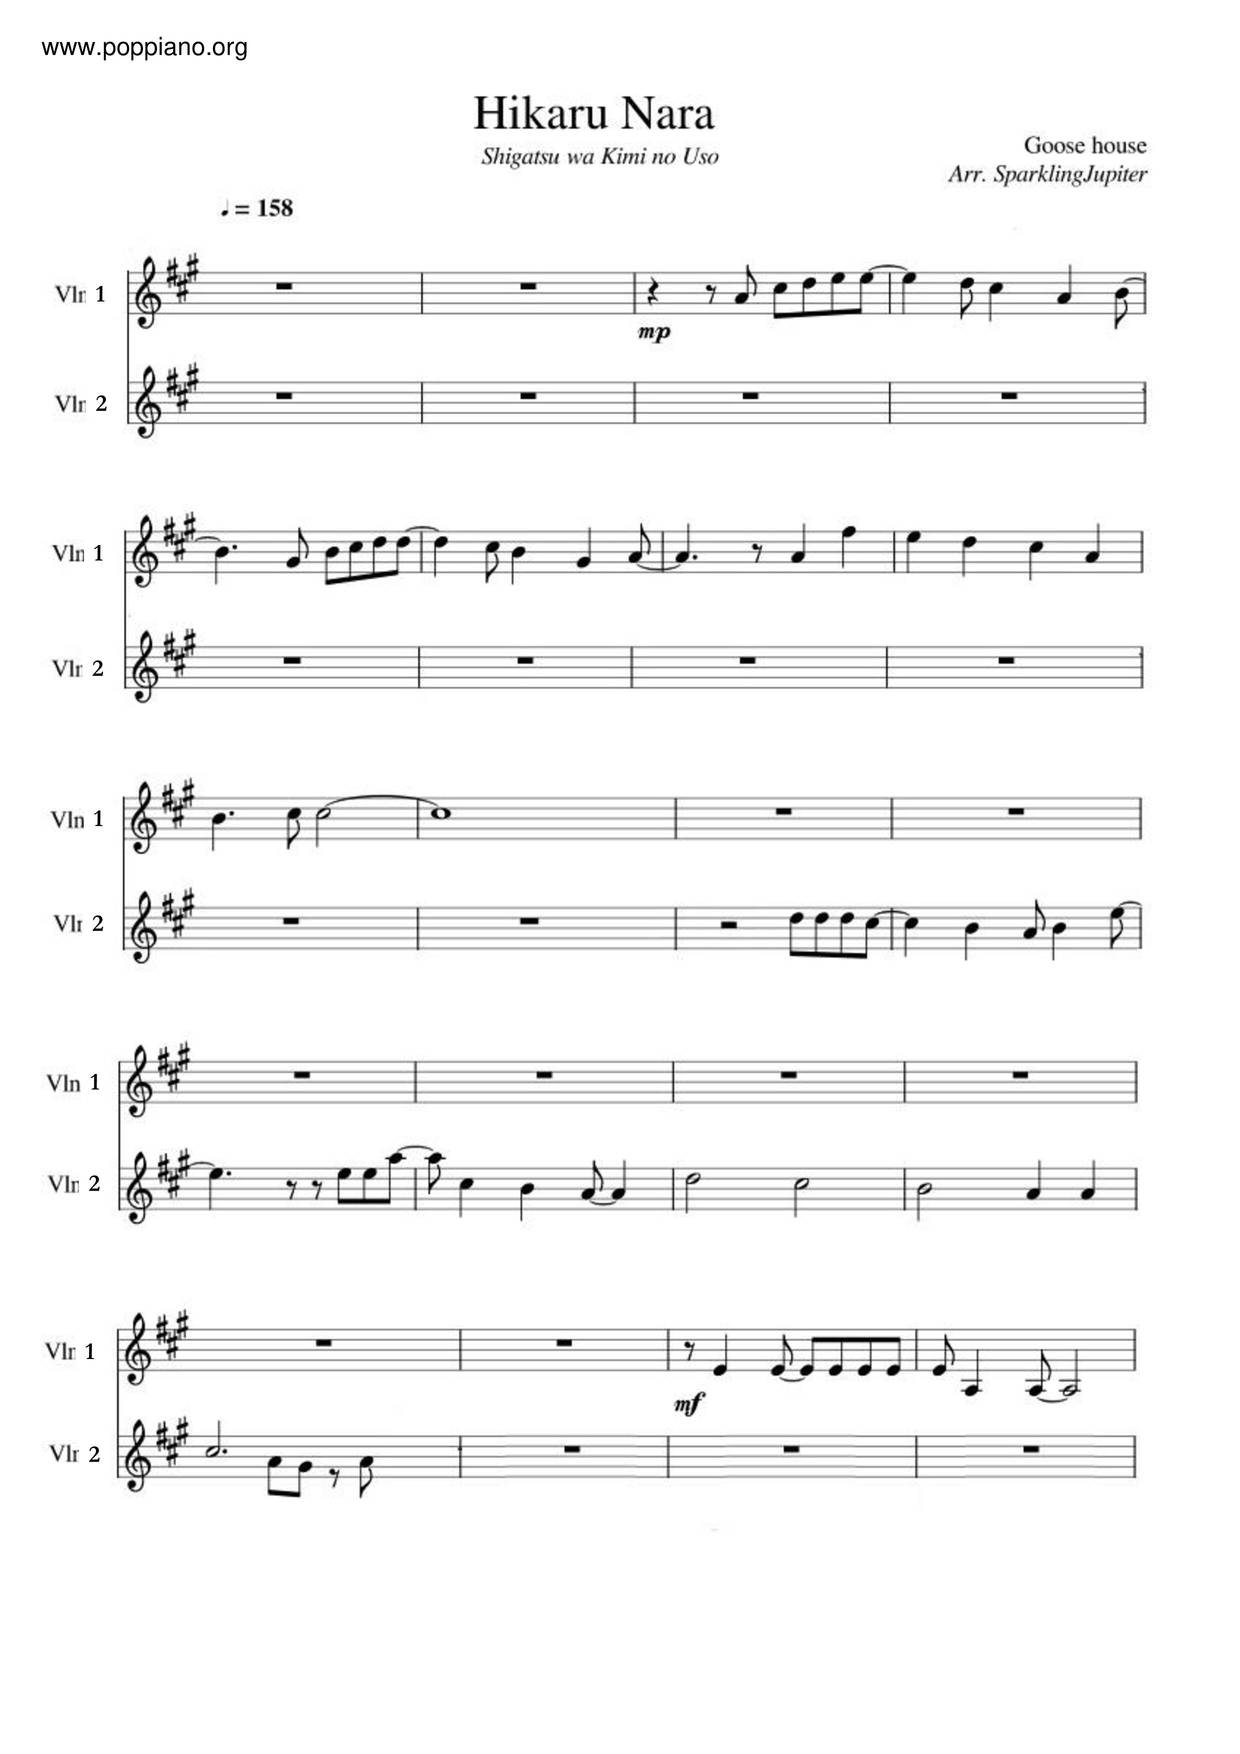 BASIC Piano Melody: Shigatsu wa Kimi no Uso OP 1 - Hikaru nara 